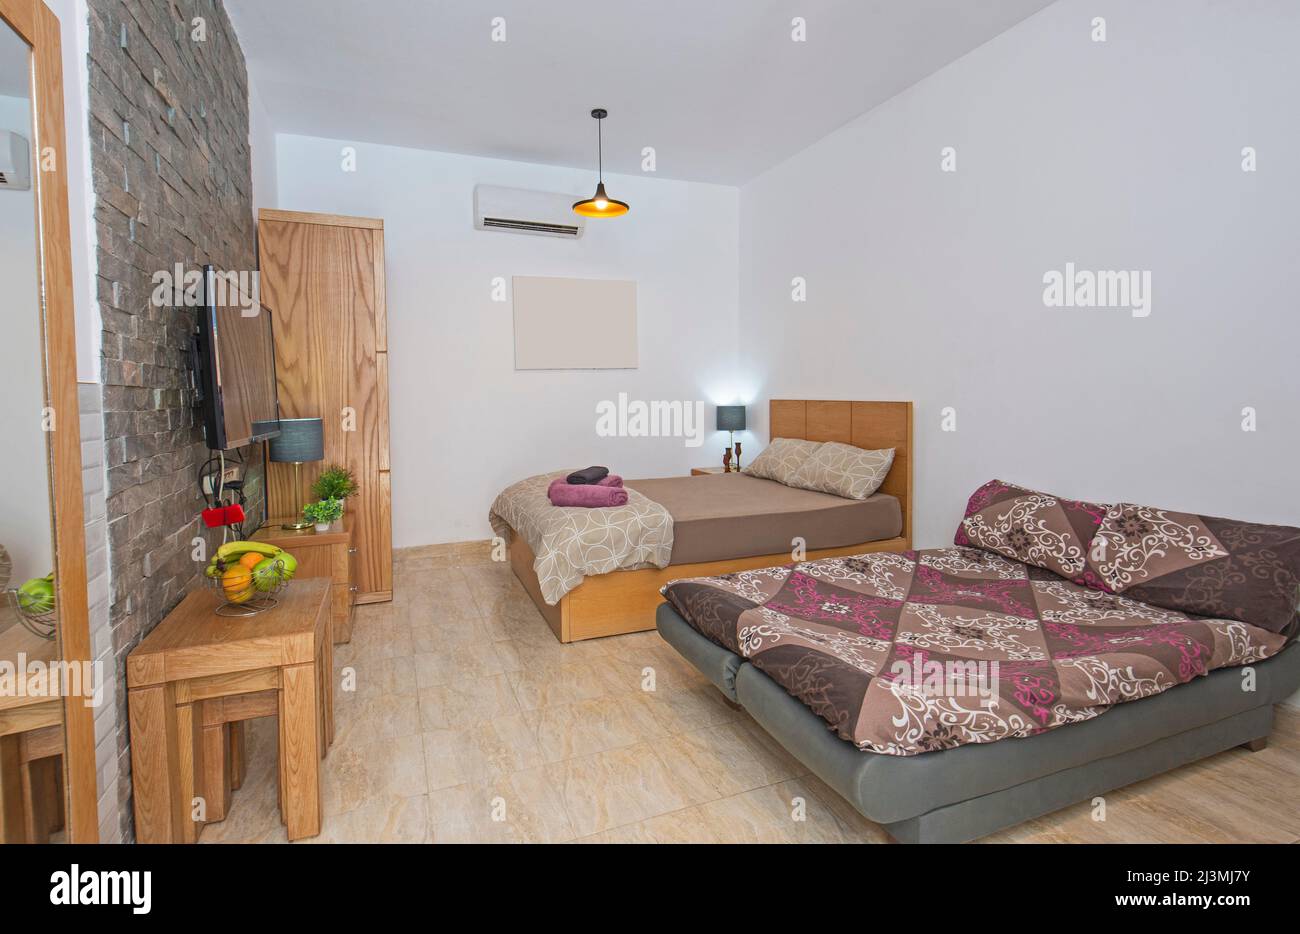 Inneneinrichtung mit modernem Schlafbereich im offenen Luxus-Studio-Apartment-Showroom mit Schlafsofa Stockfoto